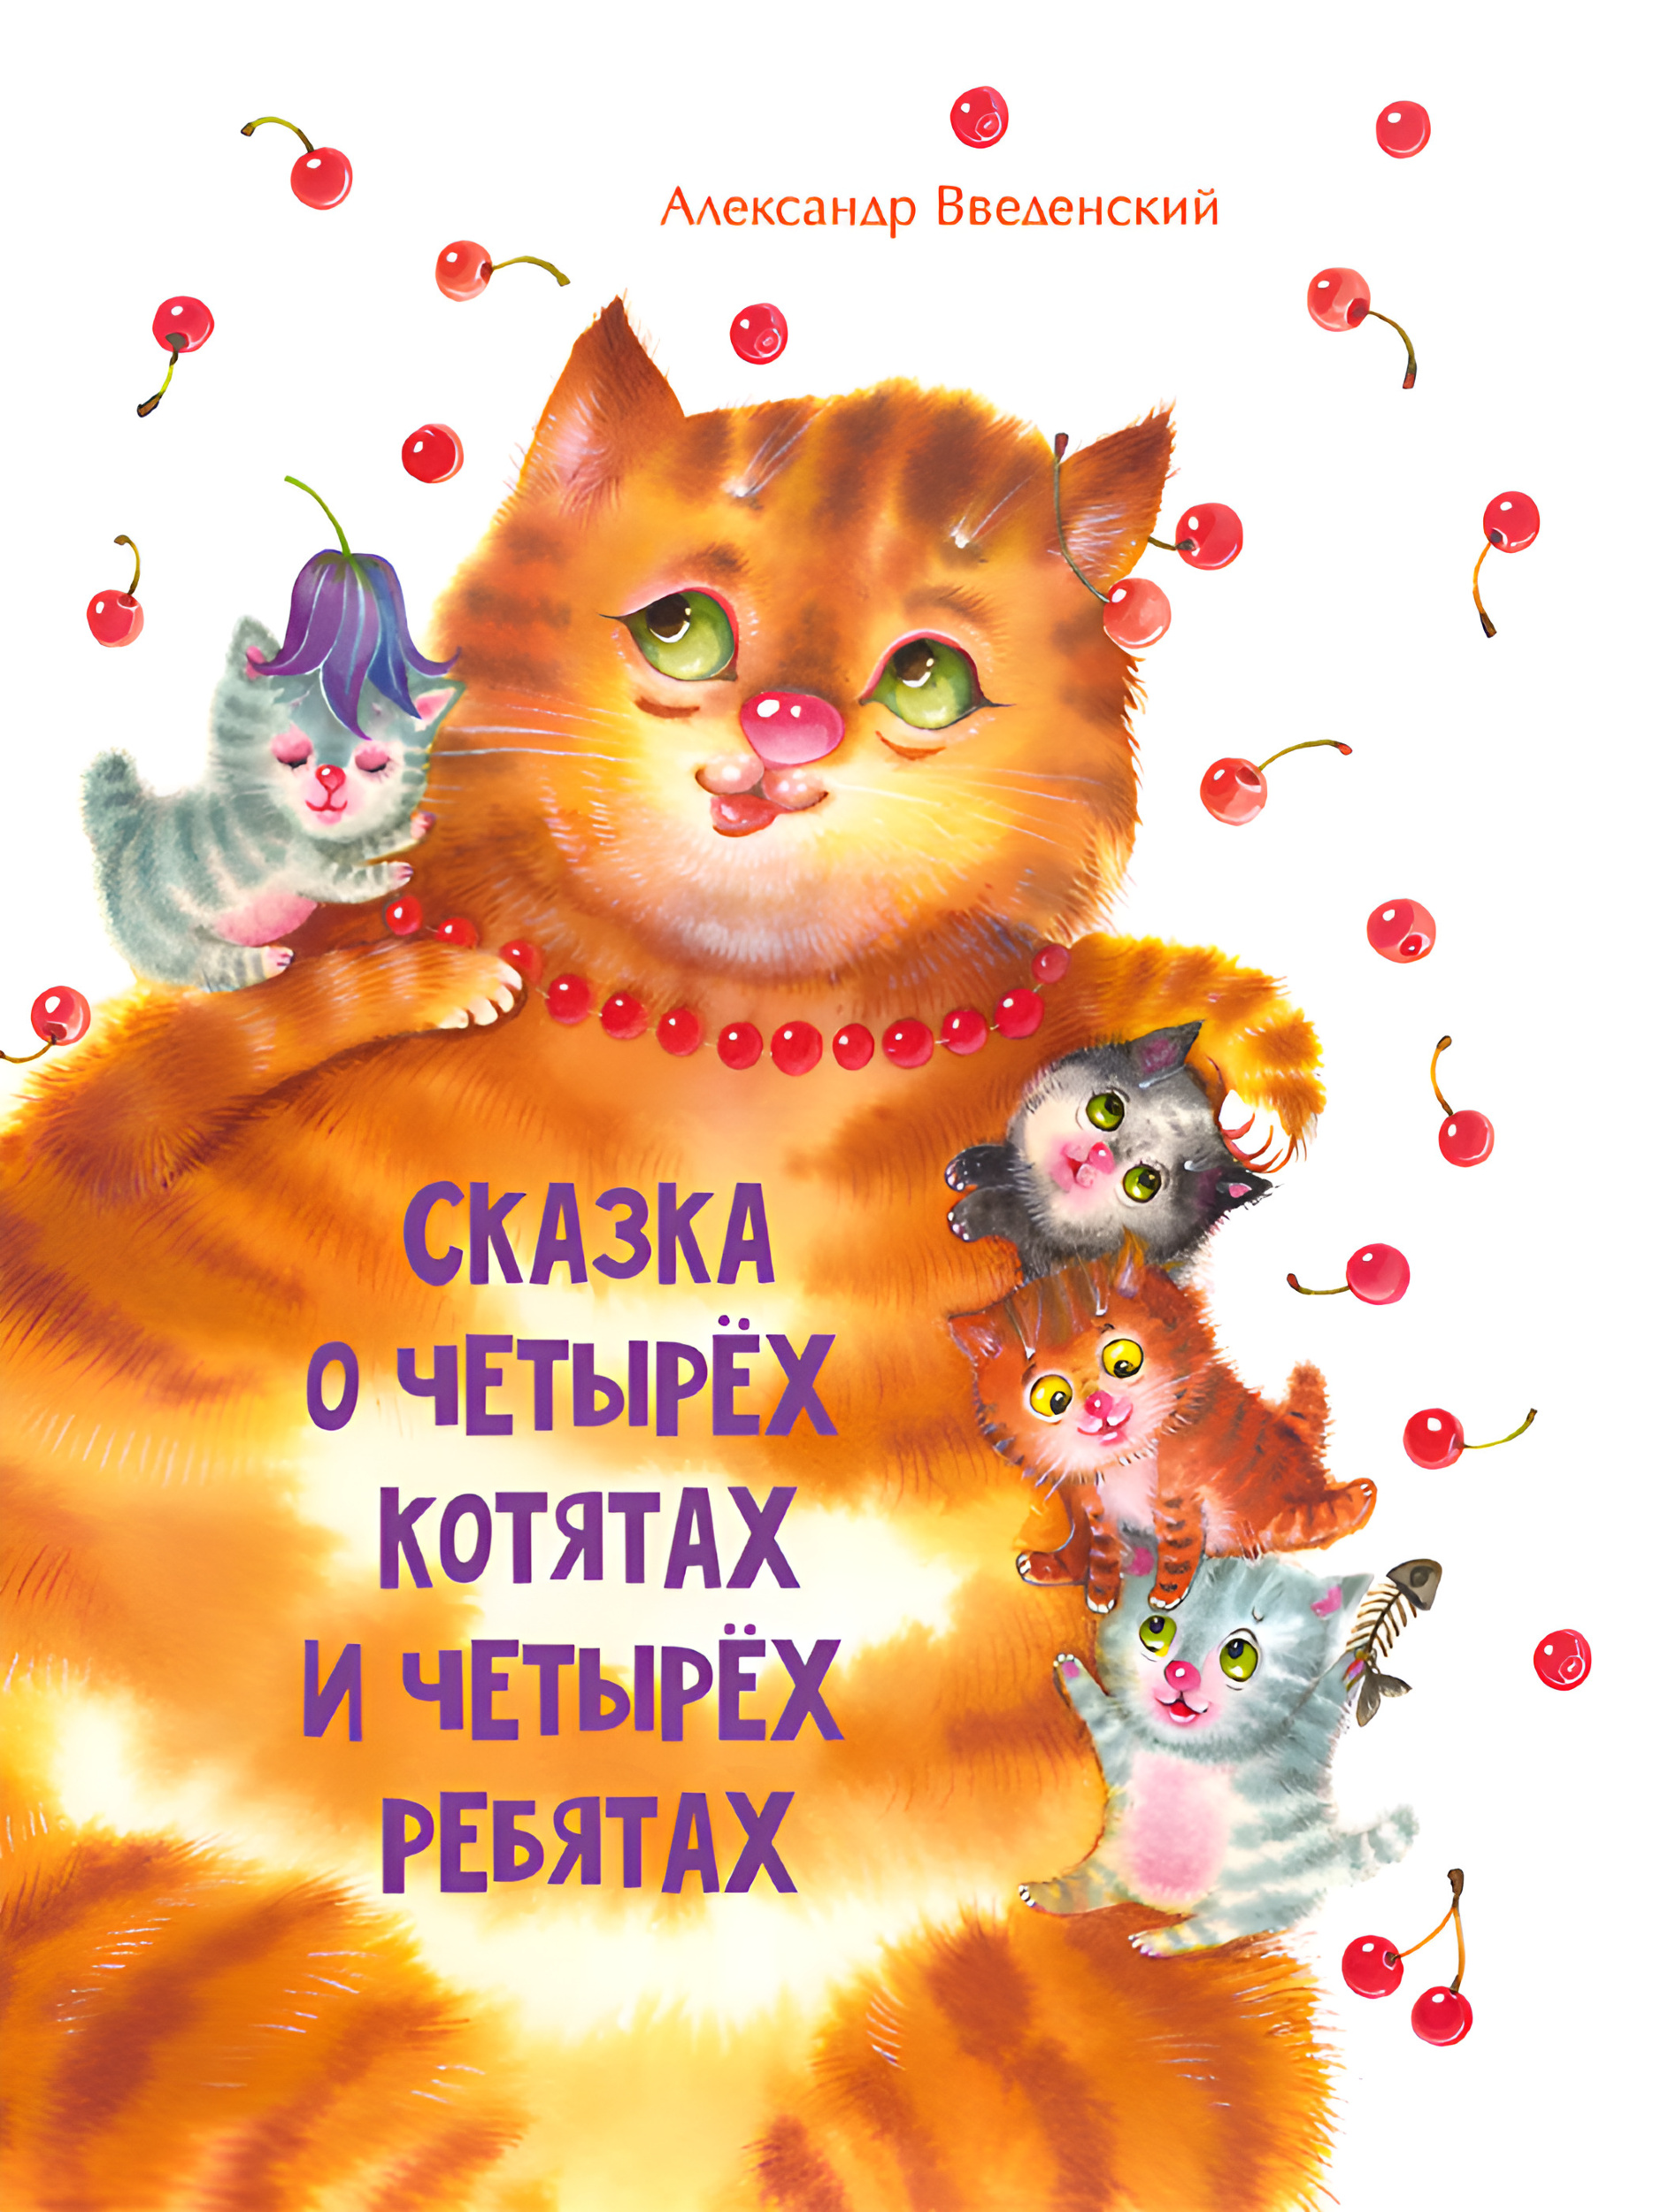 Сказка о четырех котятах и четырех ребятах. Автор — Александр Введенский. 